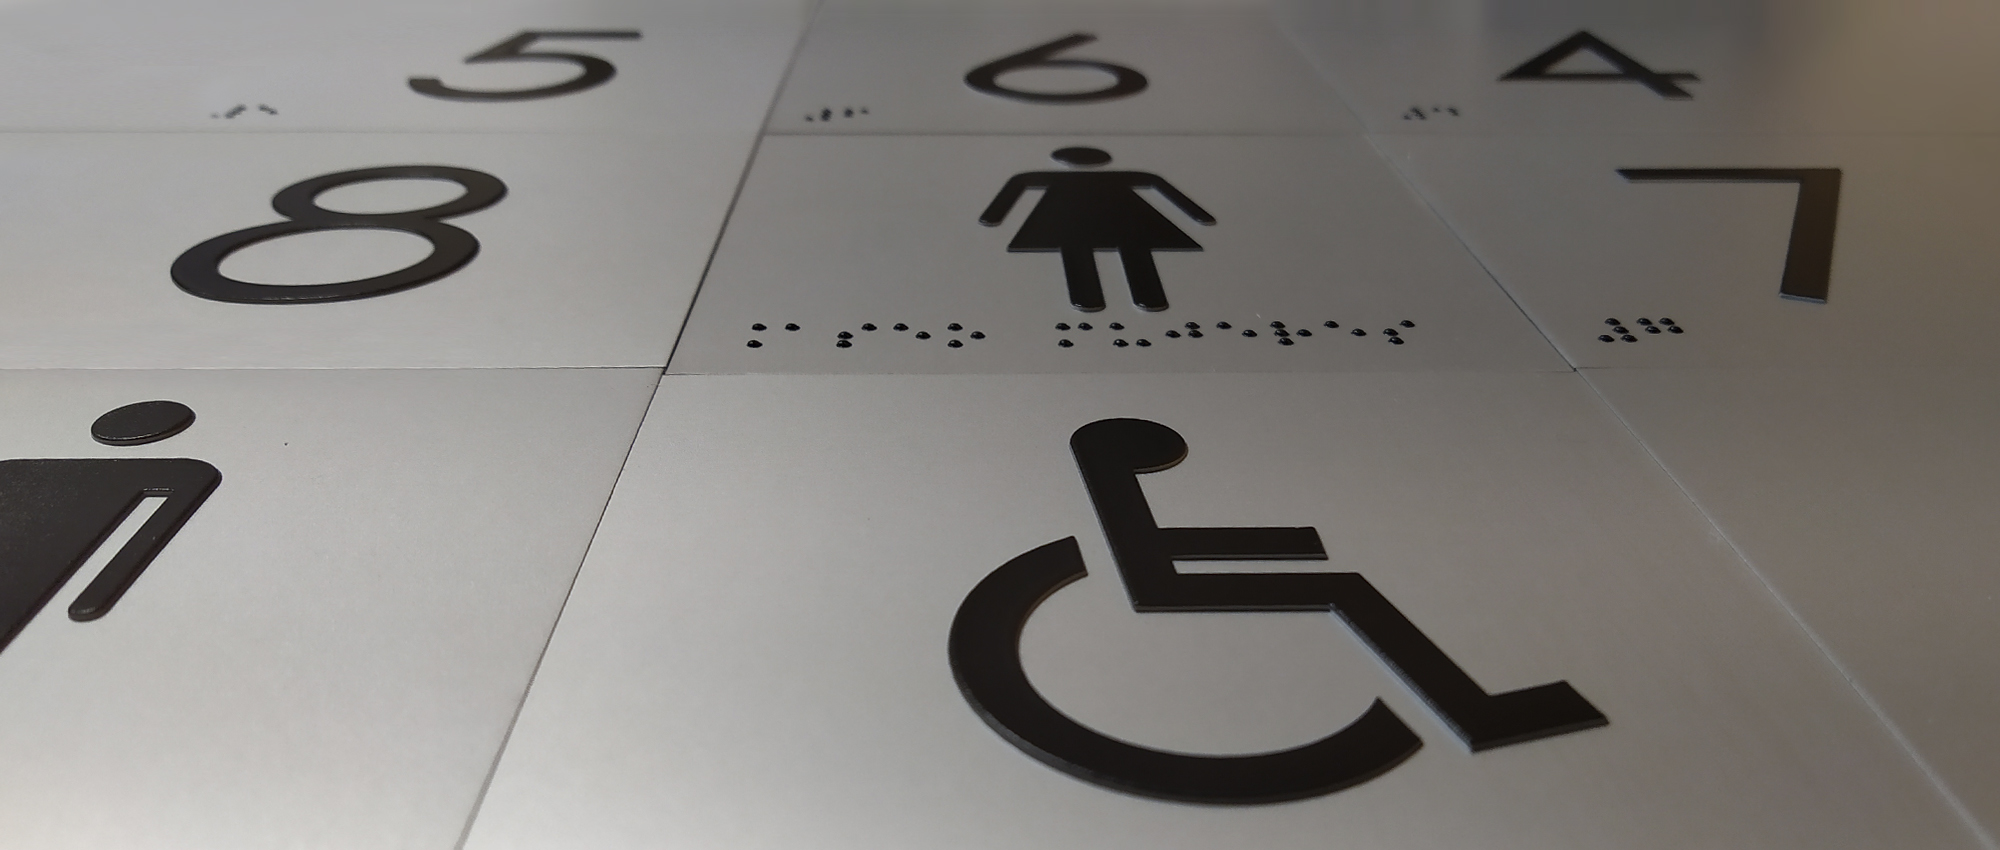 Chapas de señalización accesible con braille y altorrelieve